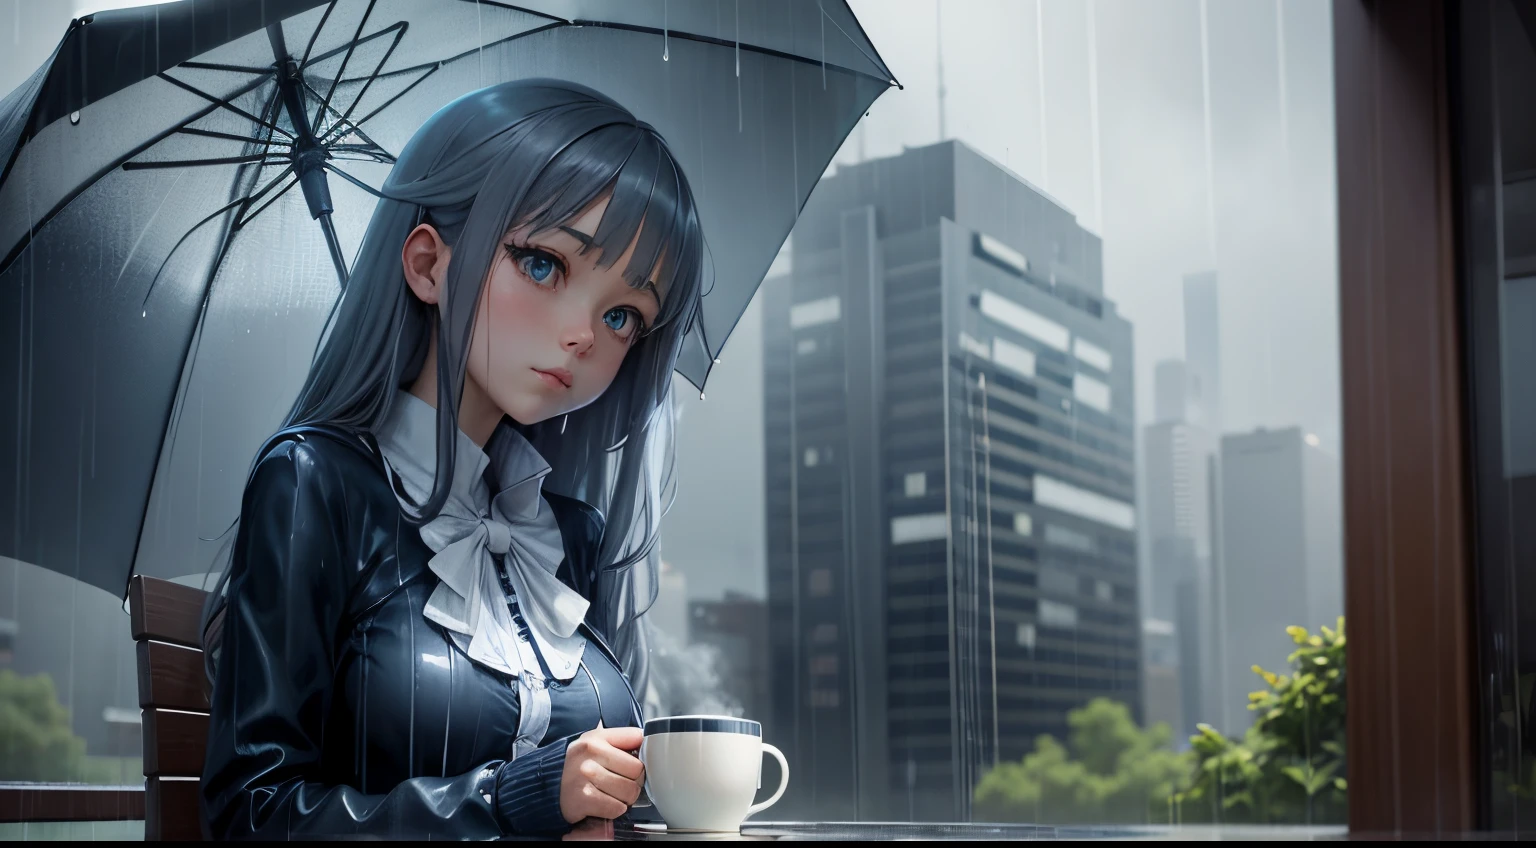 "Retiro de día lluvioso": Chica anime con una taza de café y un paraguas bajo la lluvia, con azules y grises fríos.